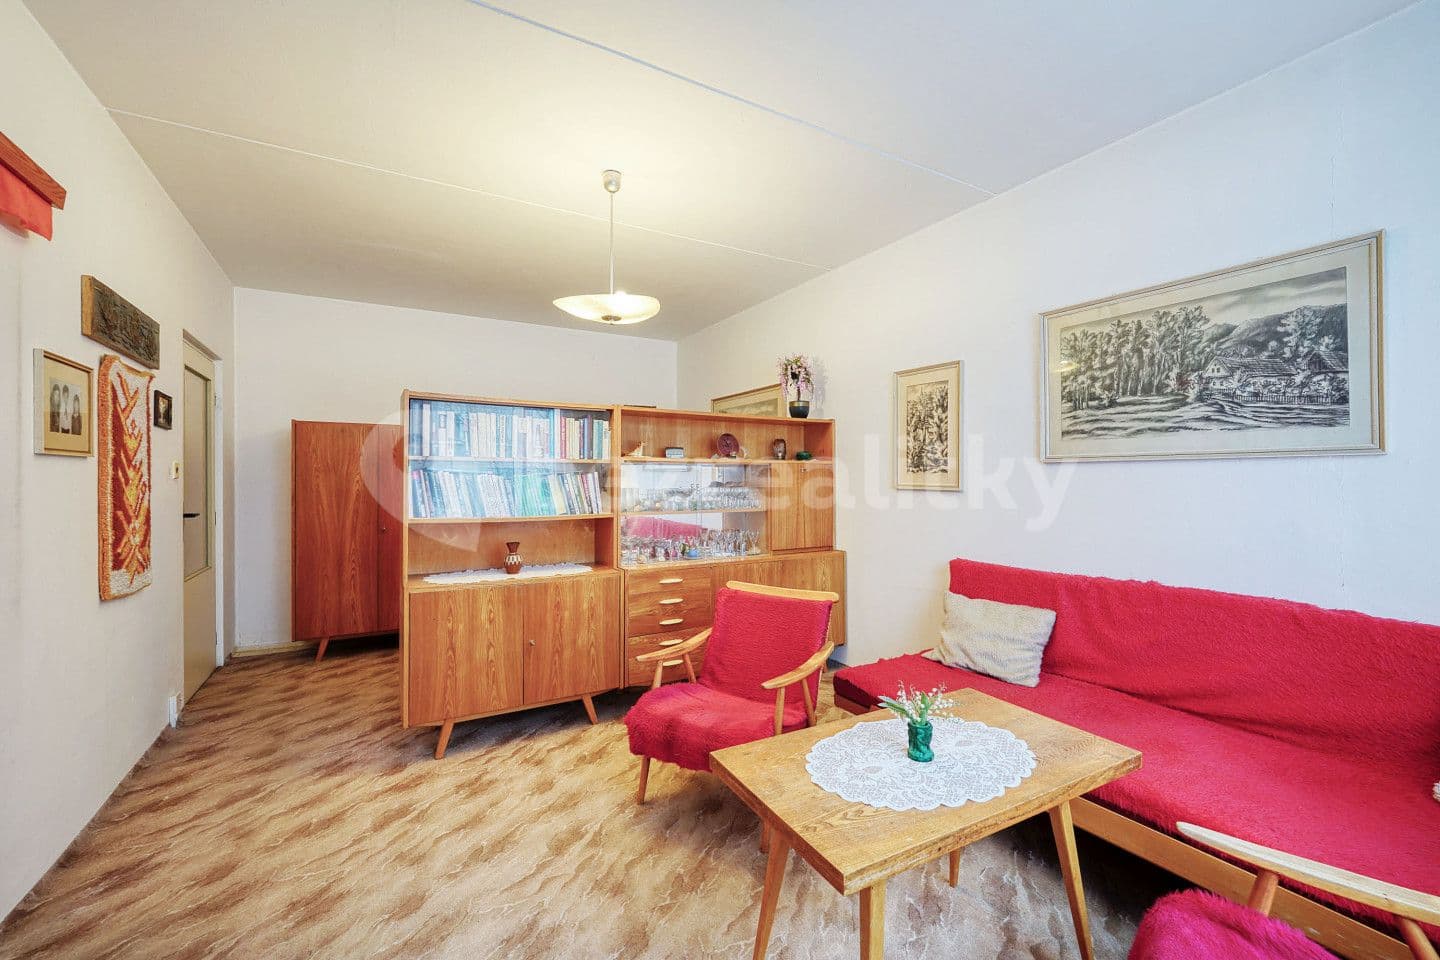 1 bedroom flat for sale, 40 m², Pod Makovým vrchem, Holýšov, Plzeňský Region